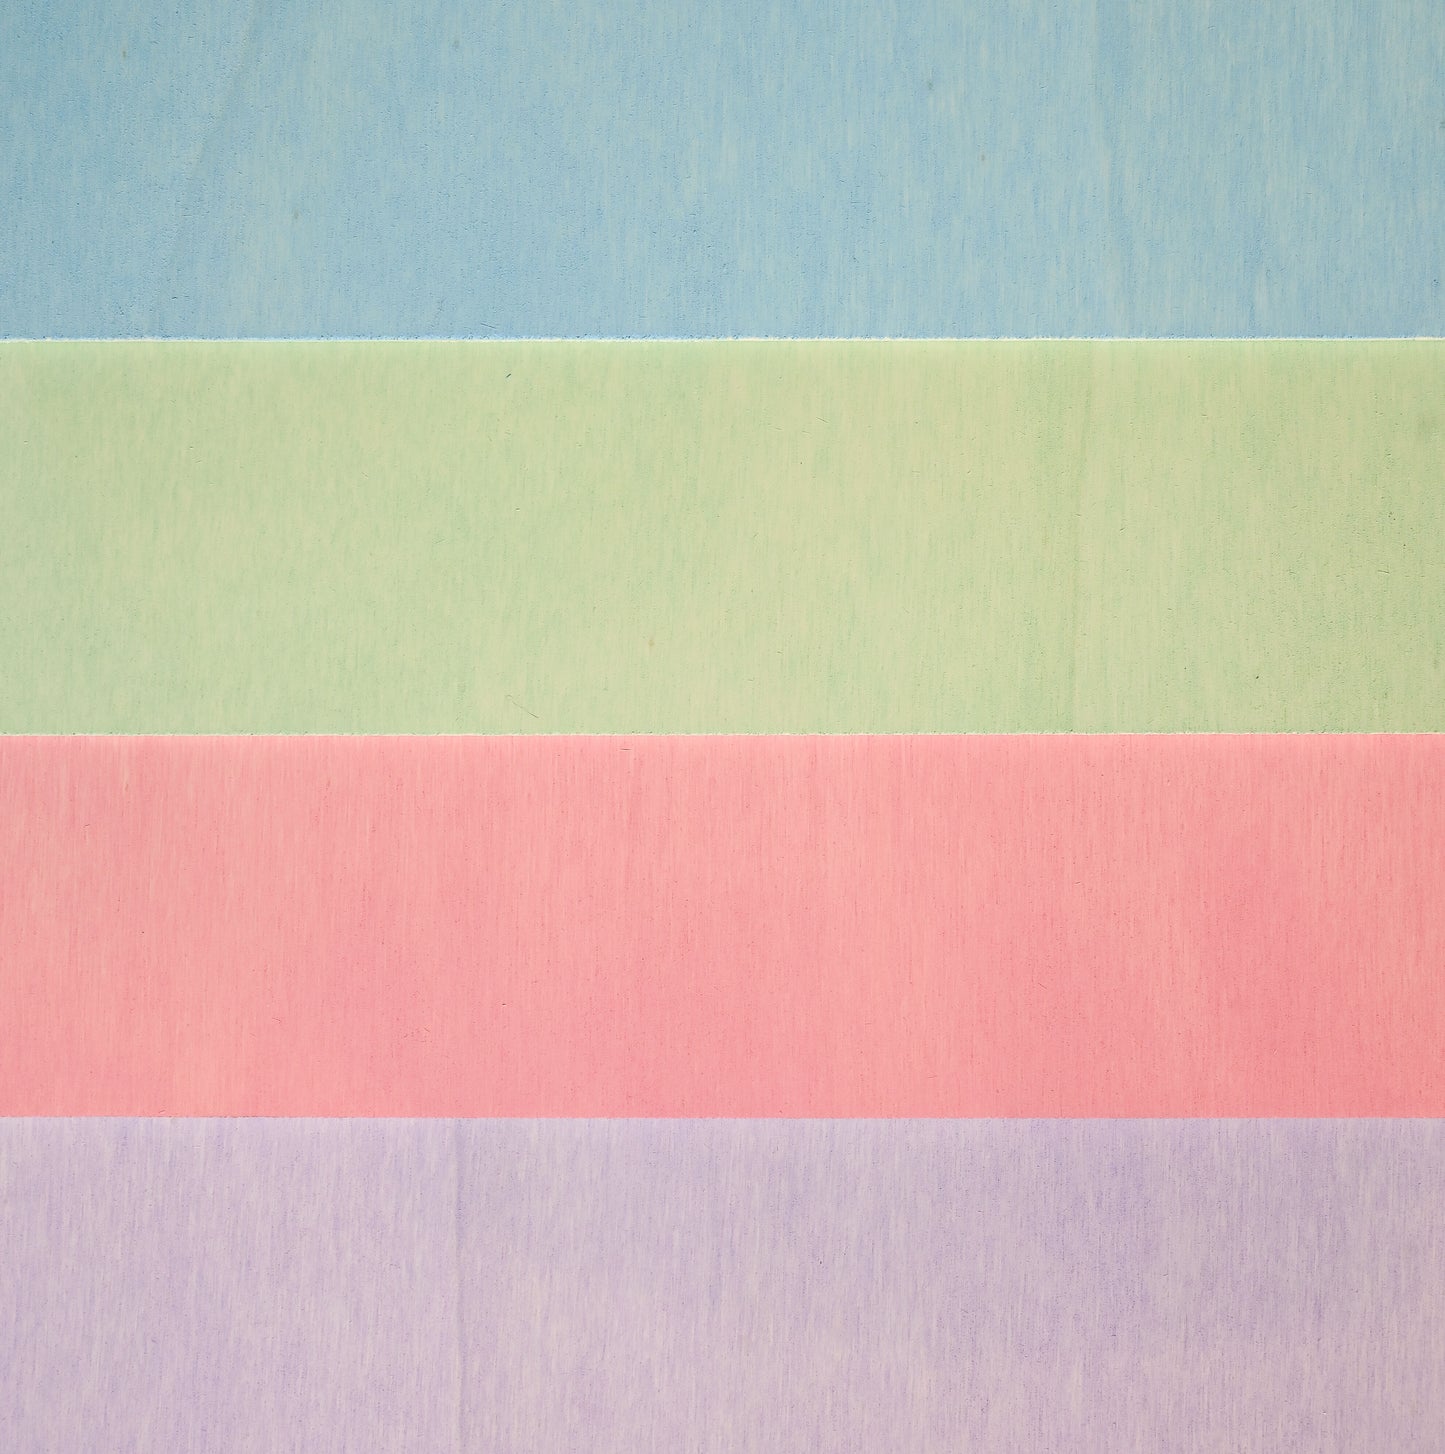 Contrachapado de álamo Mr Beam 3 mm, pastel, A3, paquete económico (4 colores)